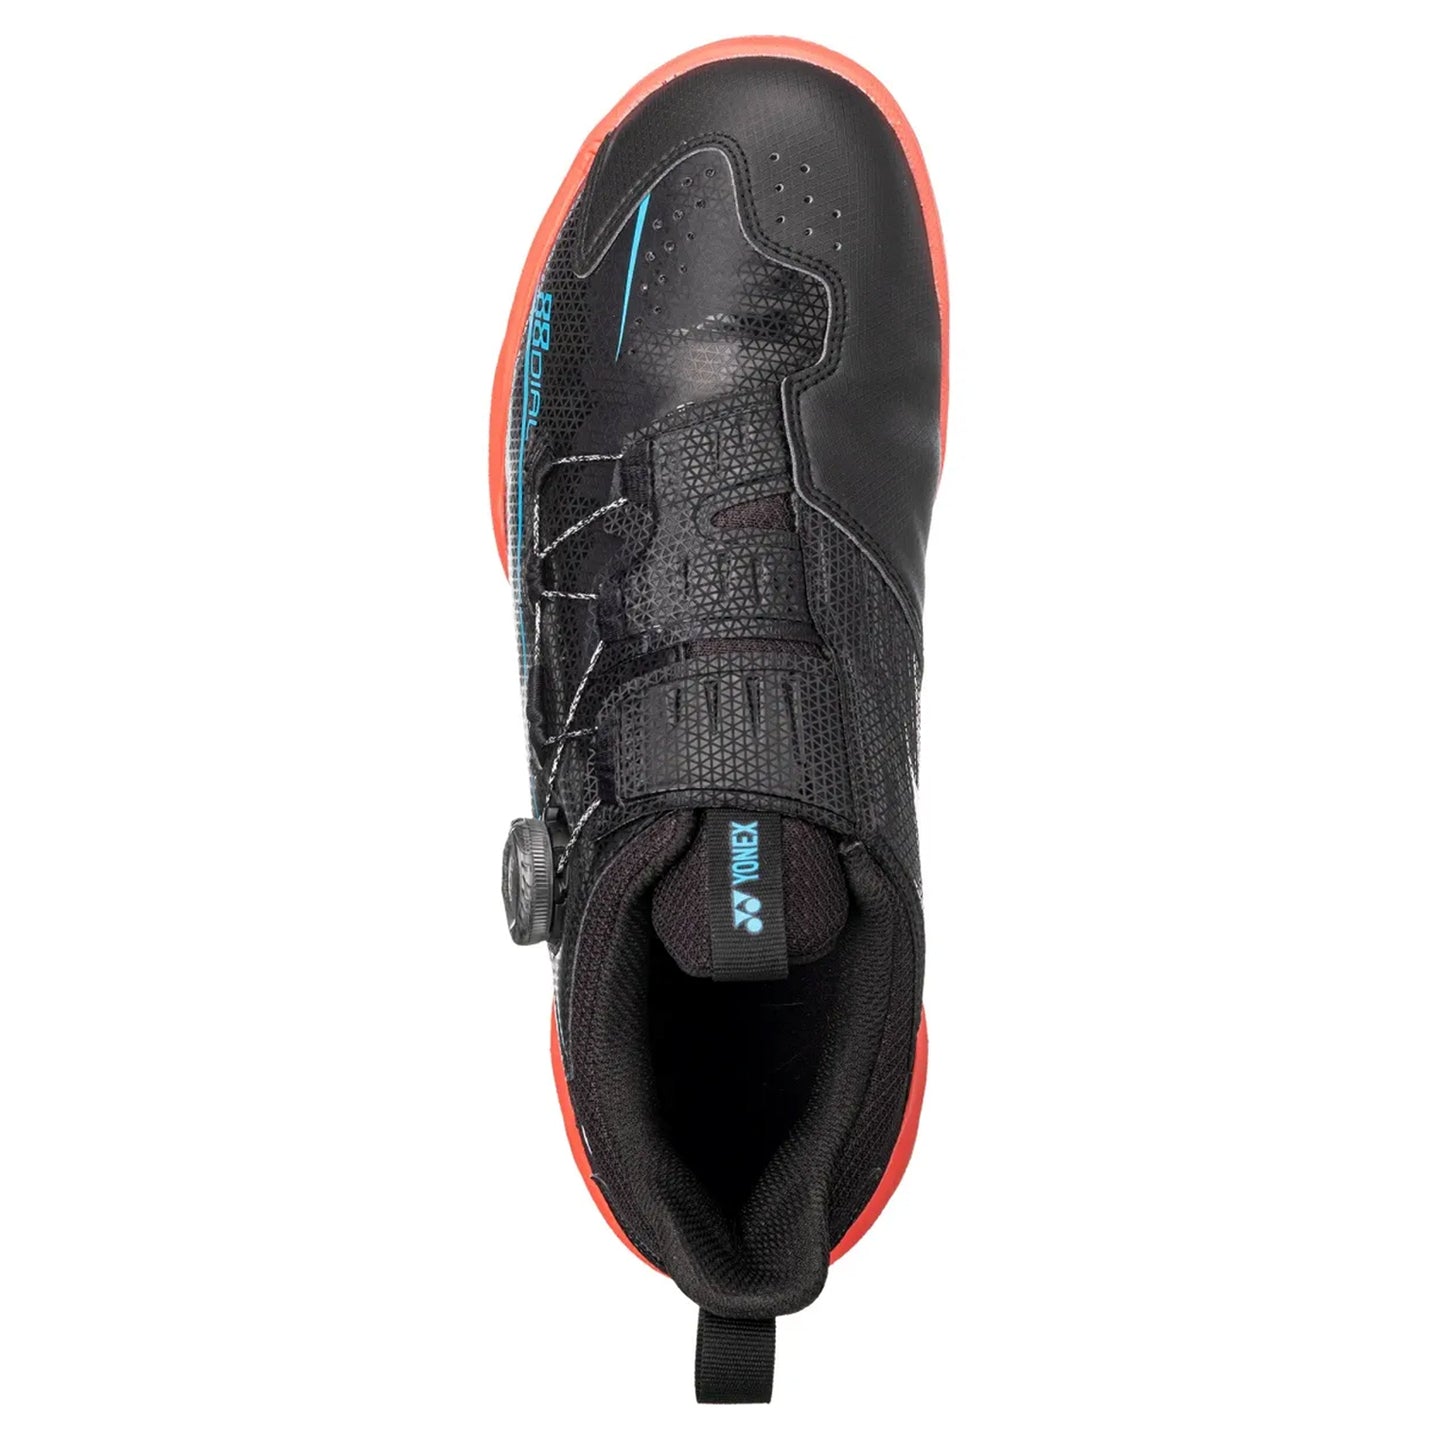 Yonex Power Cushion 88 Dial Badminton Shoes - Best Price online Prokicksports.com